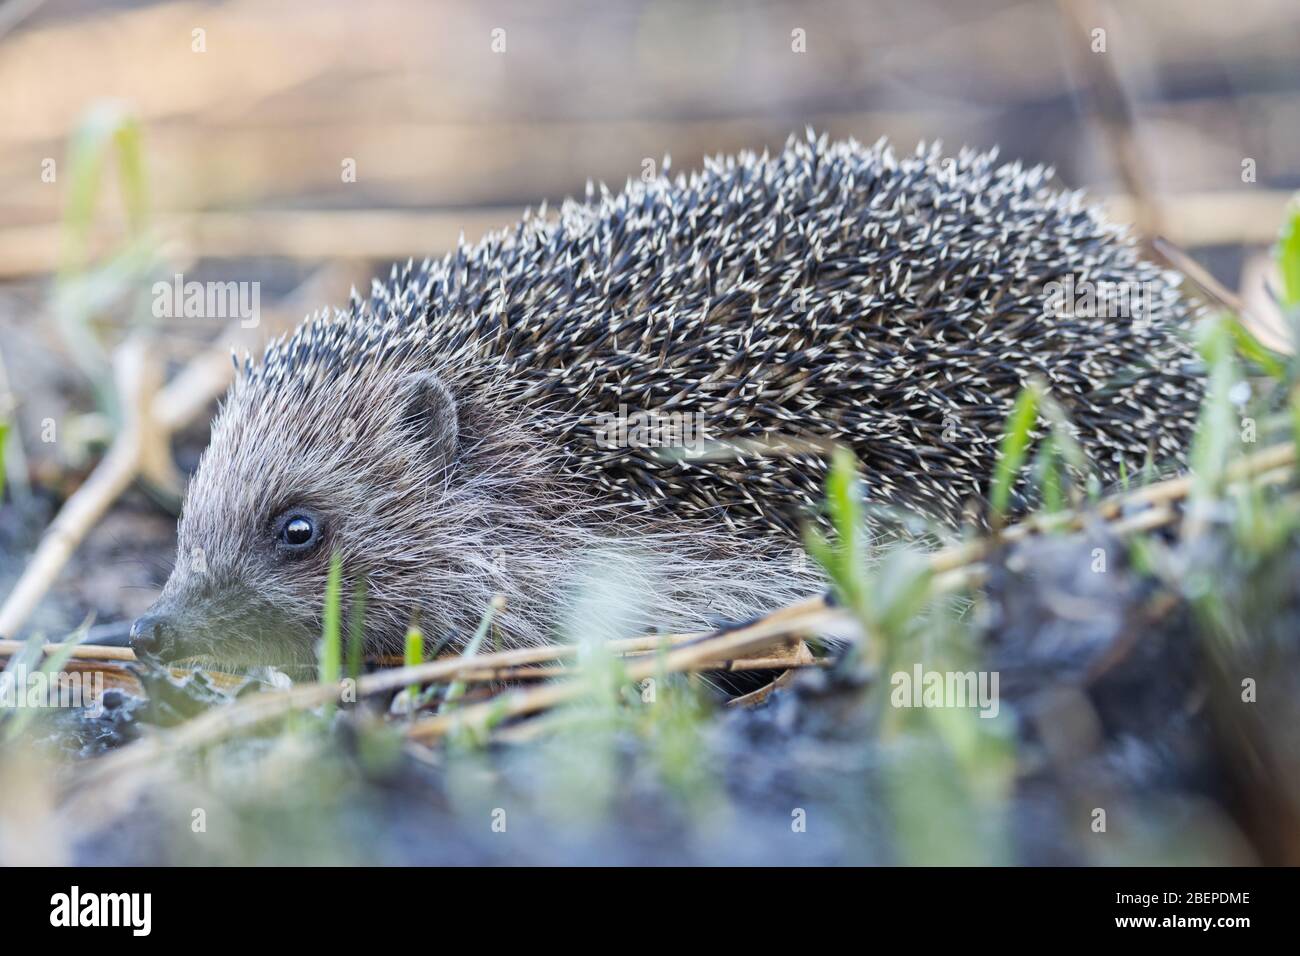 hedgehog entre hierba quemada sobre cenizas Foto de stock